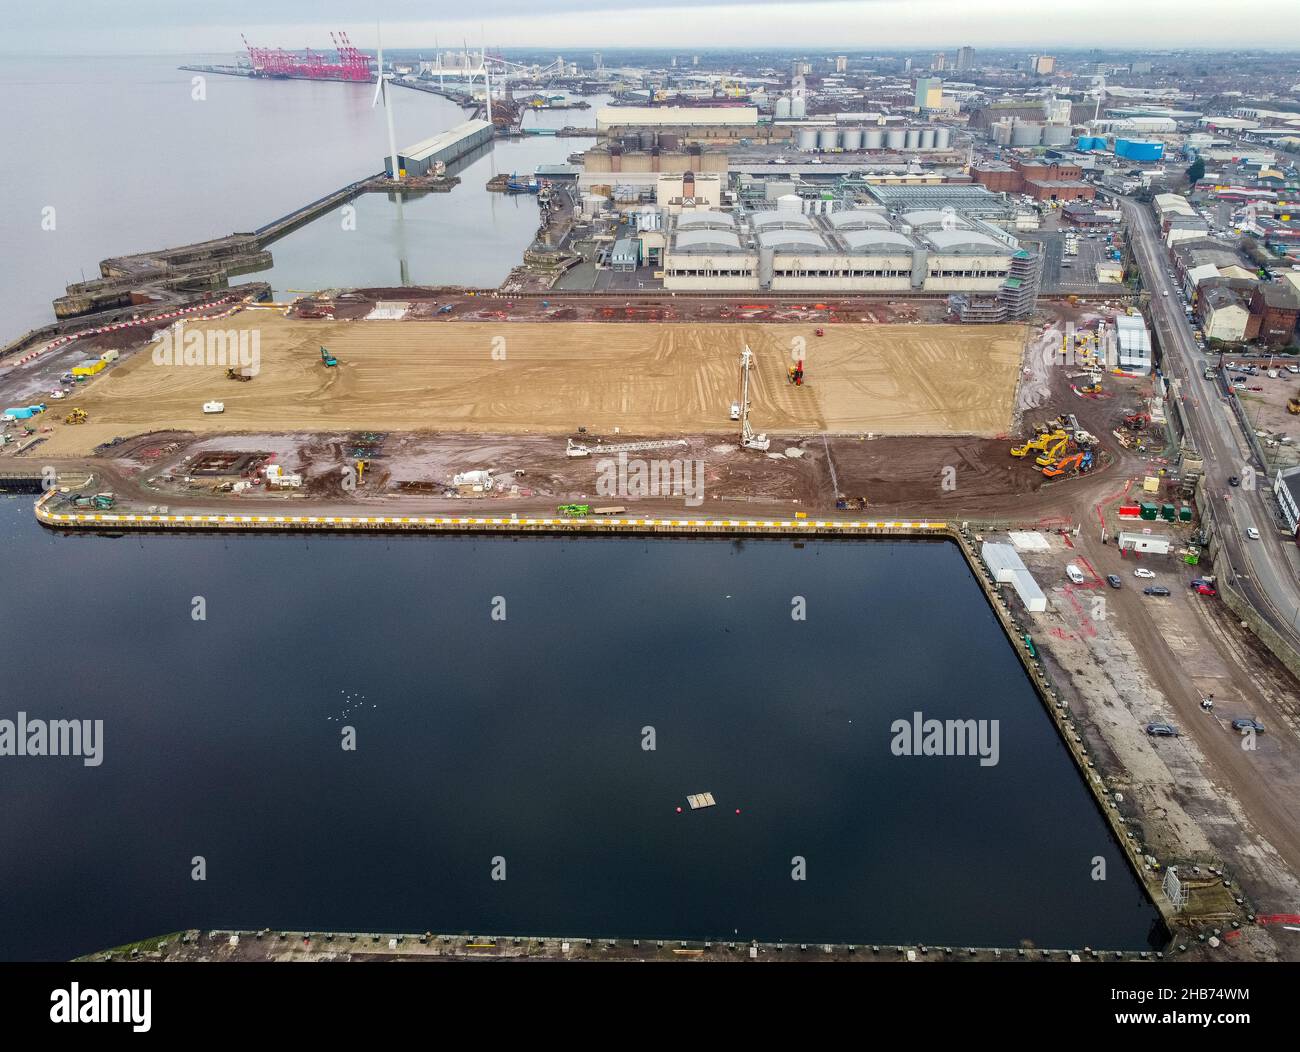 Eine Luftaufnahme der Bauarbeiten auf dem Gelände des neuen Stadions des Everton Football Clubs, das am Bramley-Moore Dock errichtet wird. Bilddatum: Freitag, 17. Dezember 2021. Stockfoto